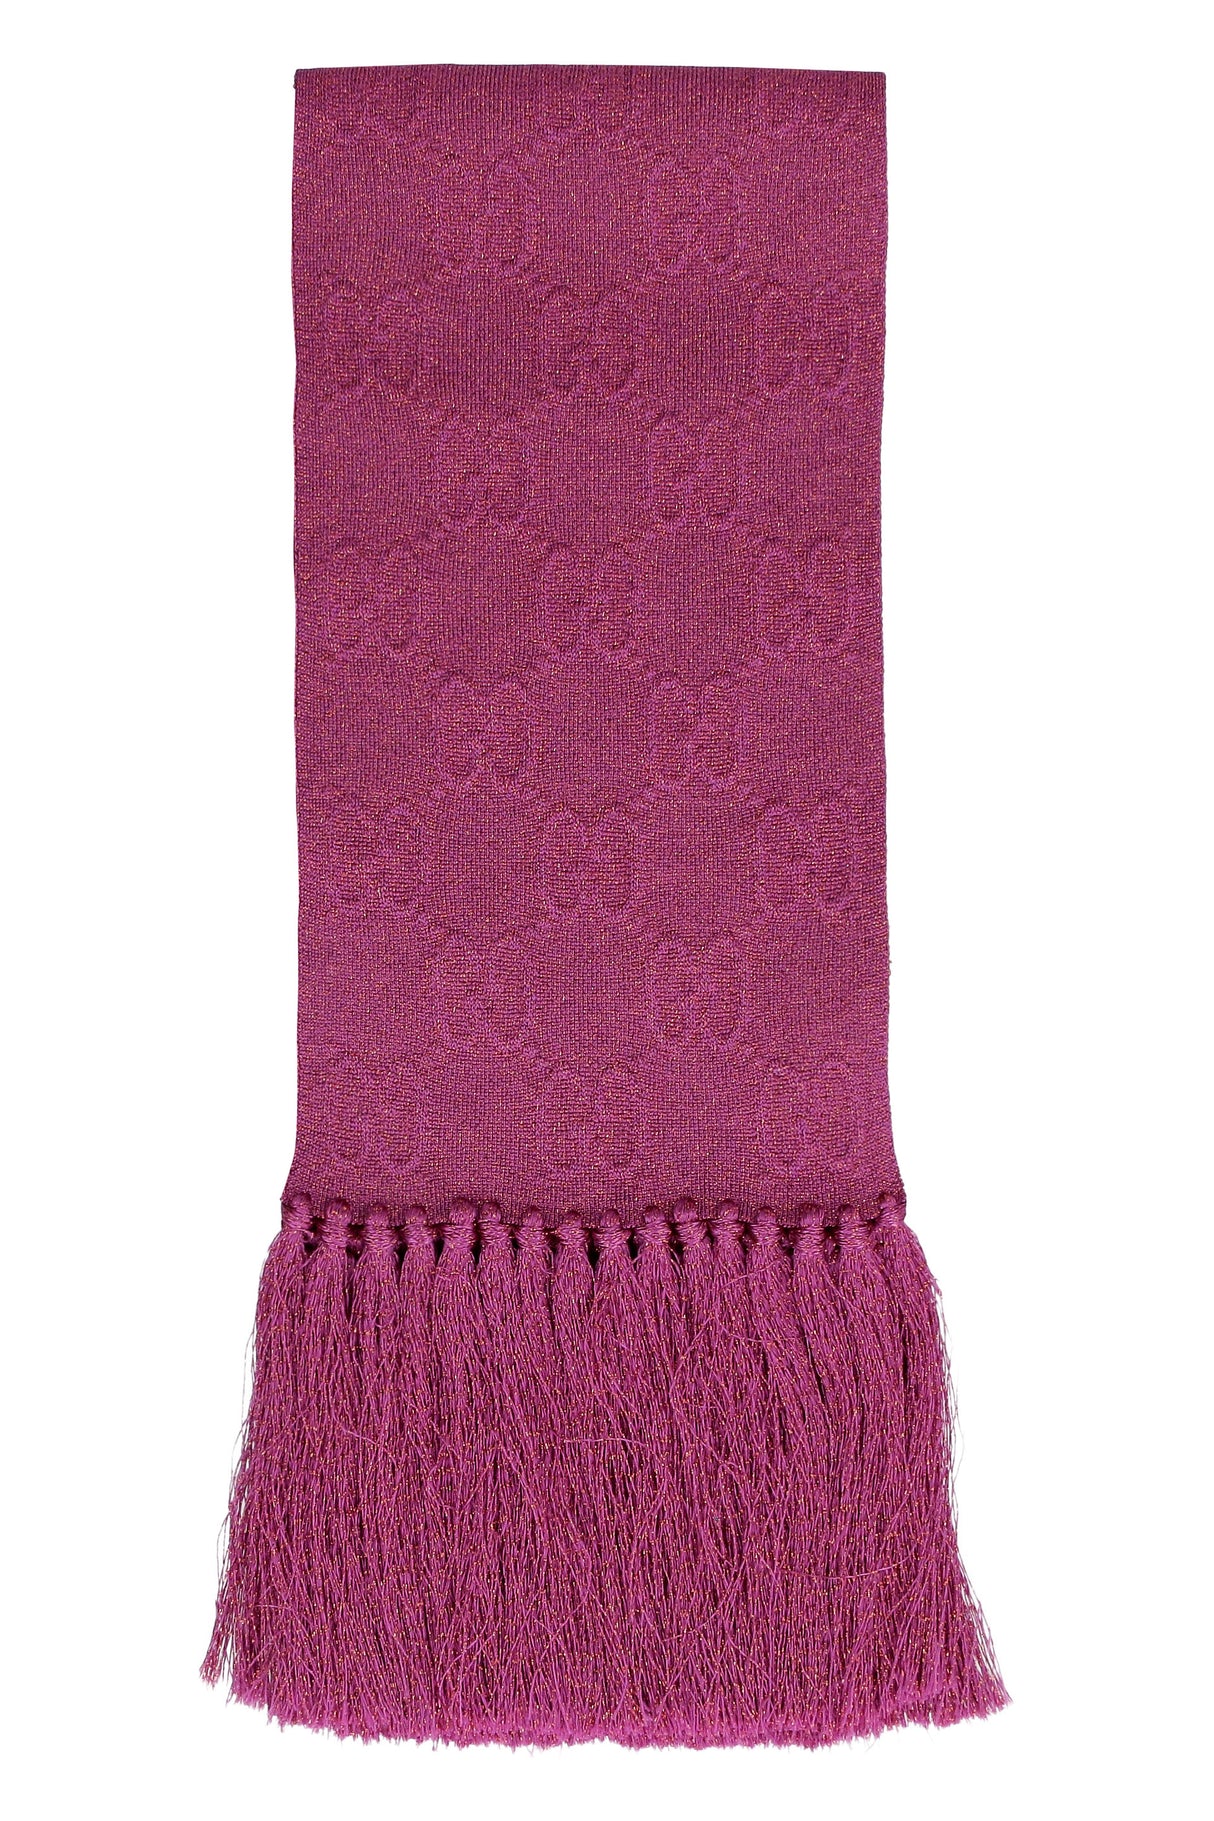 紫红色流蘇圍巾搭配粉紅點綴